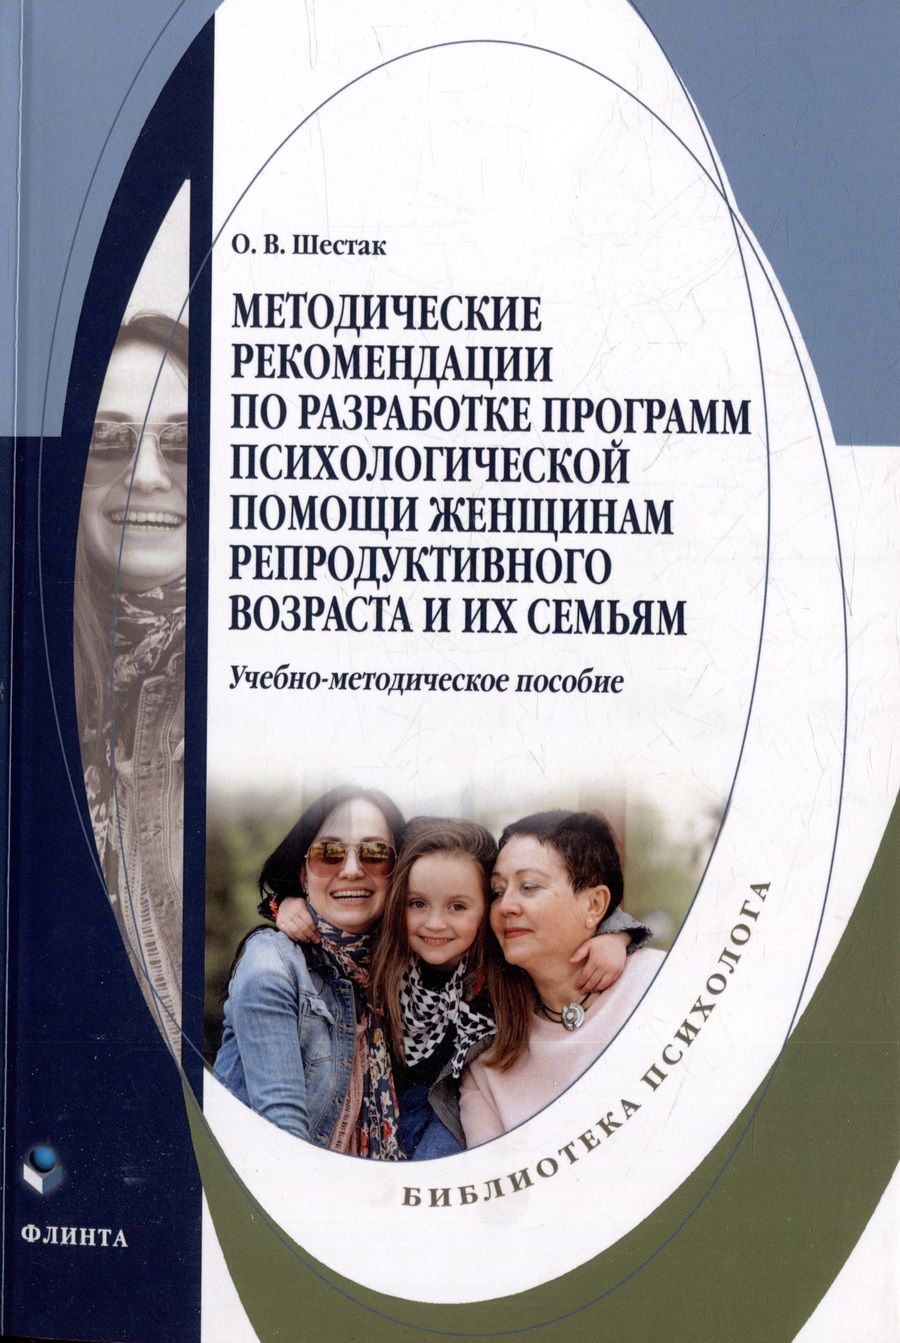 Обложка книги "Шестак: Методические рекомендации по разработке программ психологической помощи женщинам"